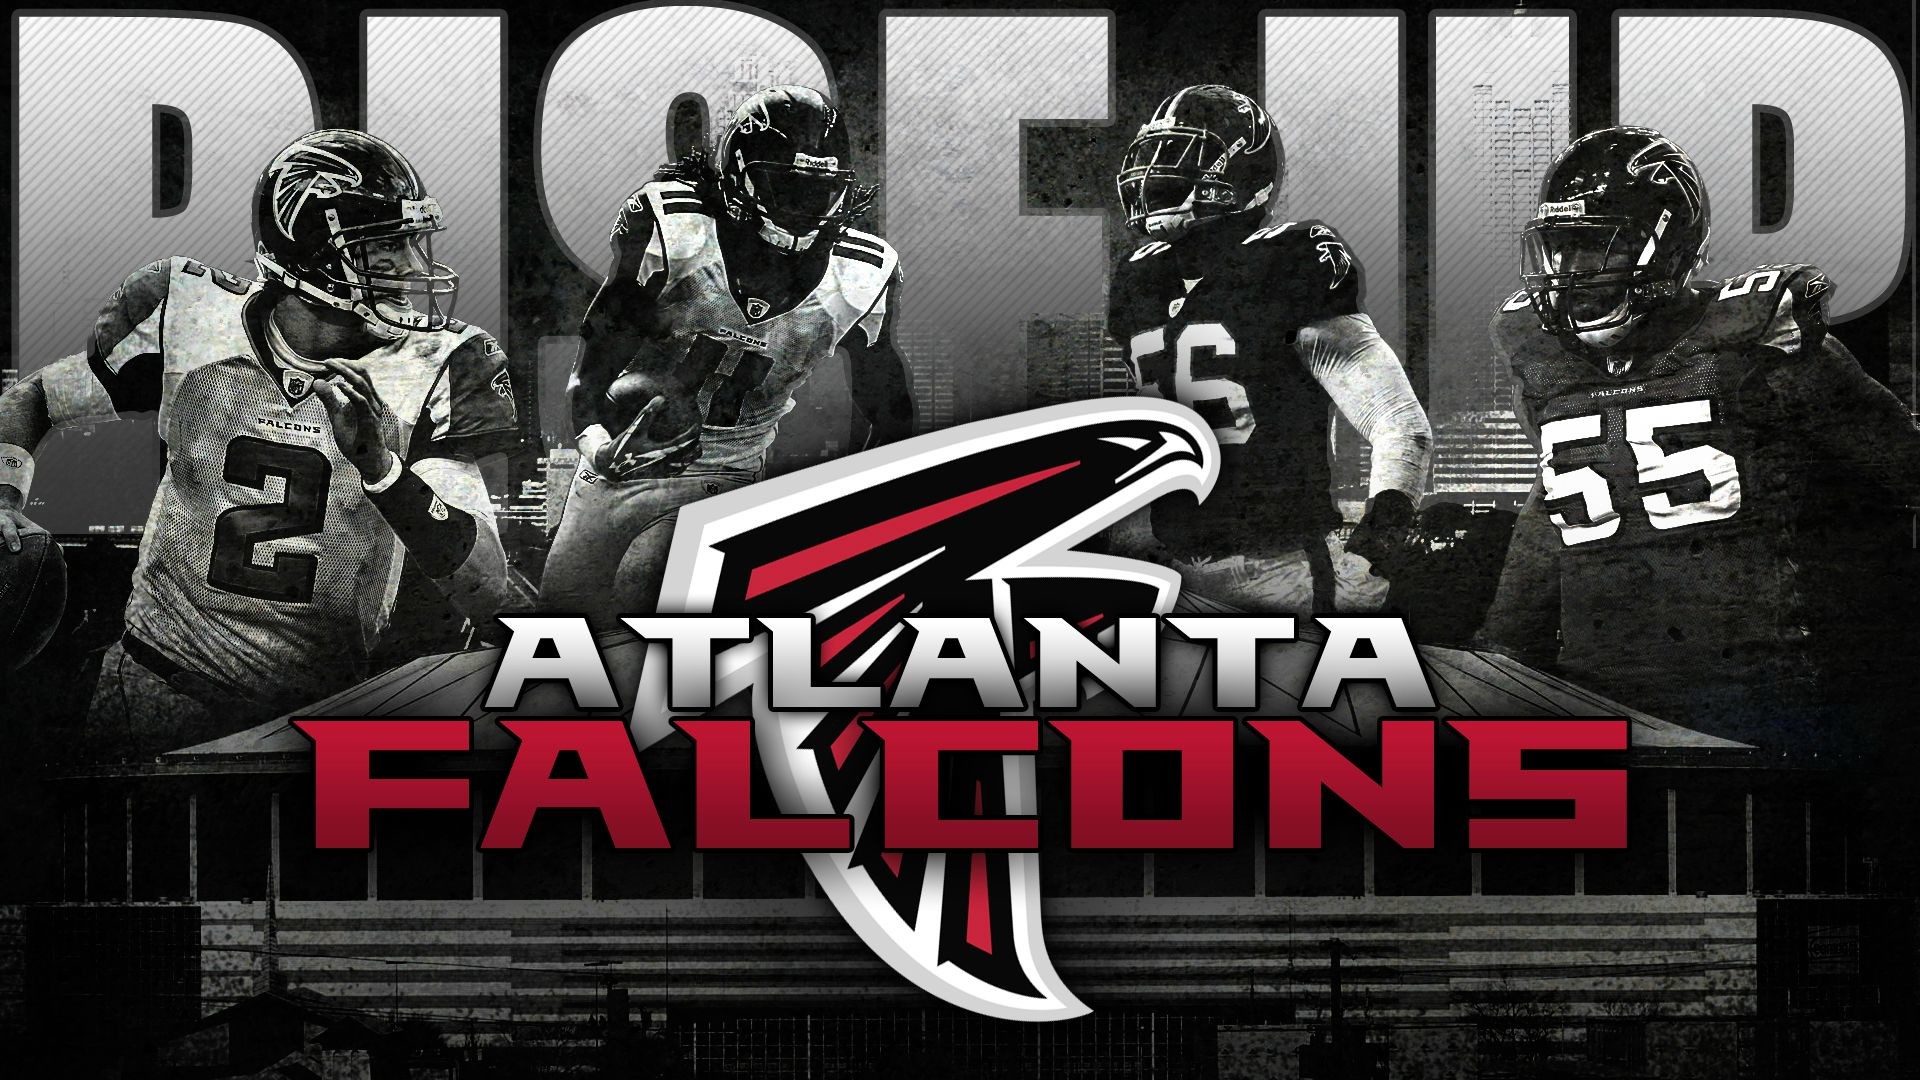 Atlanta Falcons Desktop Wallpaper 1280x1024 by Chris Liskiewicz on Dribbble